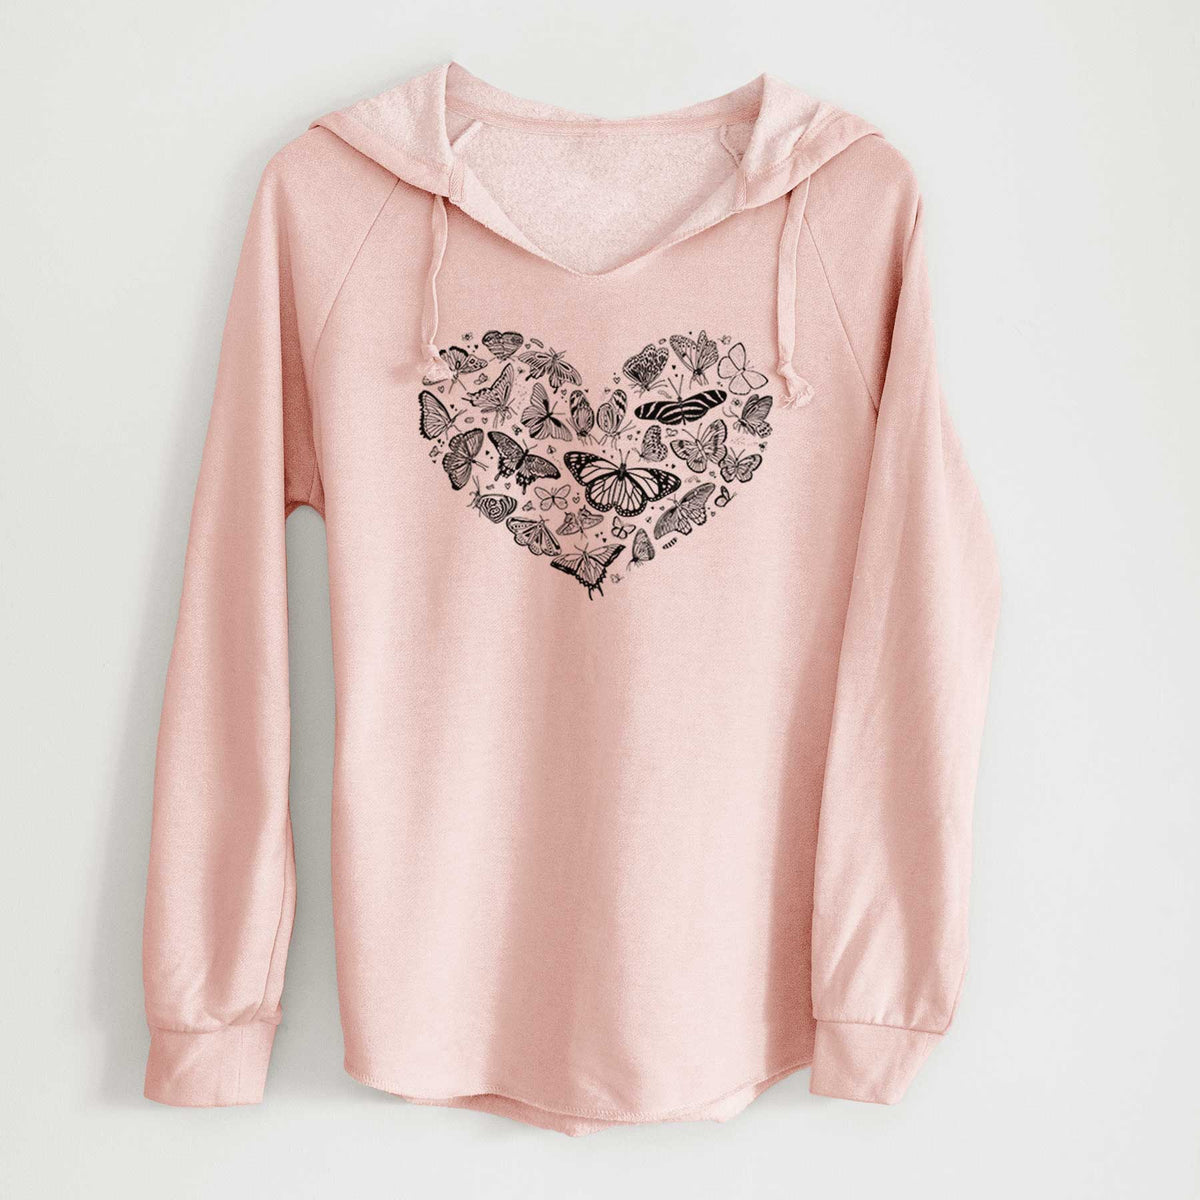 Heart Full of Butterflies - Cali Wave Hooded Sweatshirt